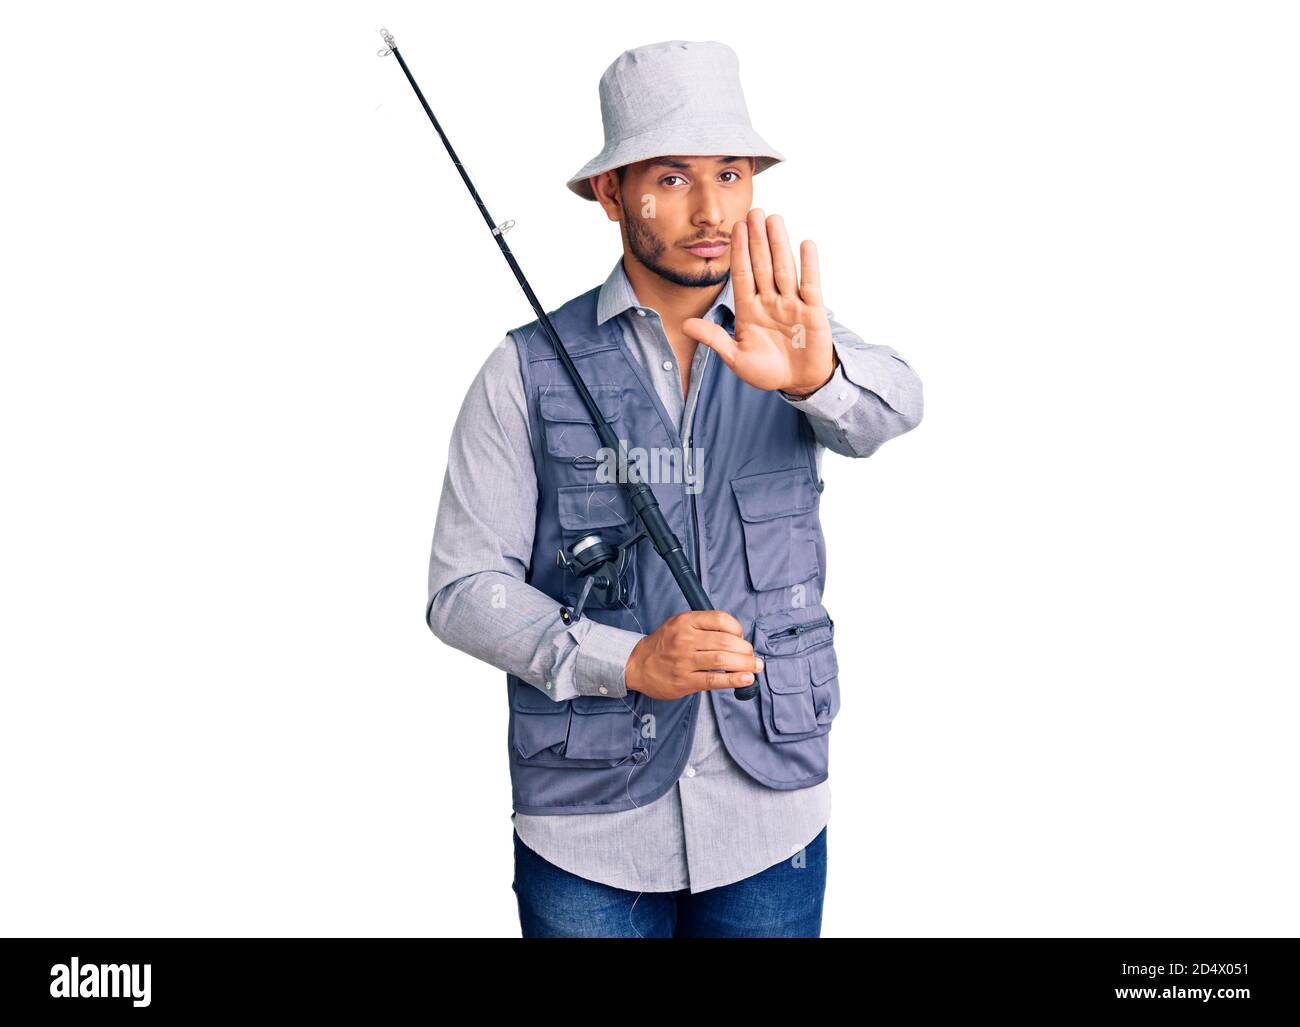 Schöner lateinamerikanischer junger Mann, der Fischerausrüstung mit offener Hand trägt und Stoppschild mit ernstem und selbstbewusster Ausdruck, Verteidigungsgeste tut Stockfoto